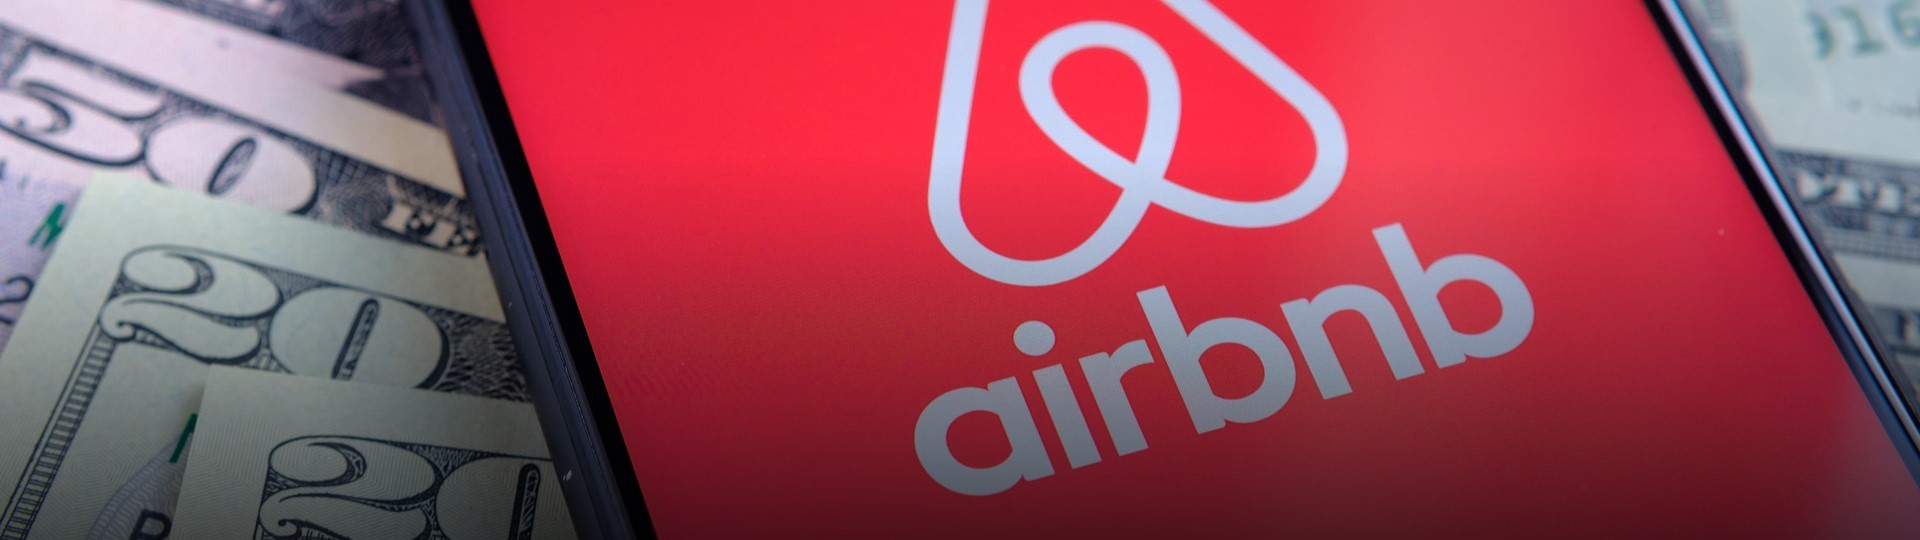 Primární emise akcií by mohla Airbnb ohodnotit na 42 miliard dolarů